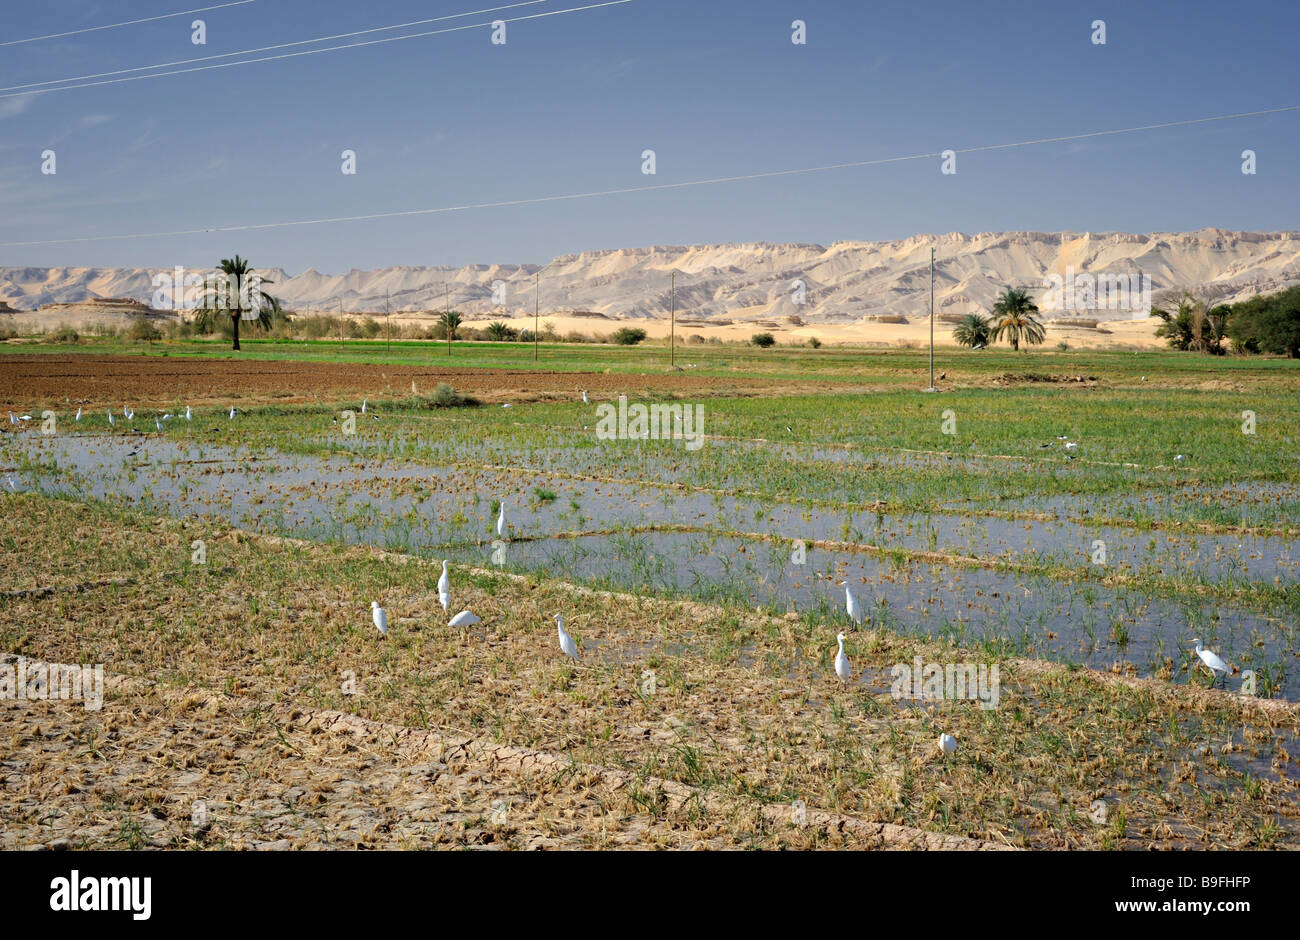 Champs de riz paddy de western desert oasis en Egypte, avec oiseaux blancs, d'alimentation et de désert collines en arrière-plan Banque D'Images